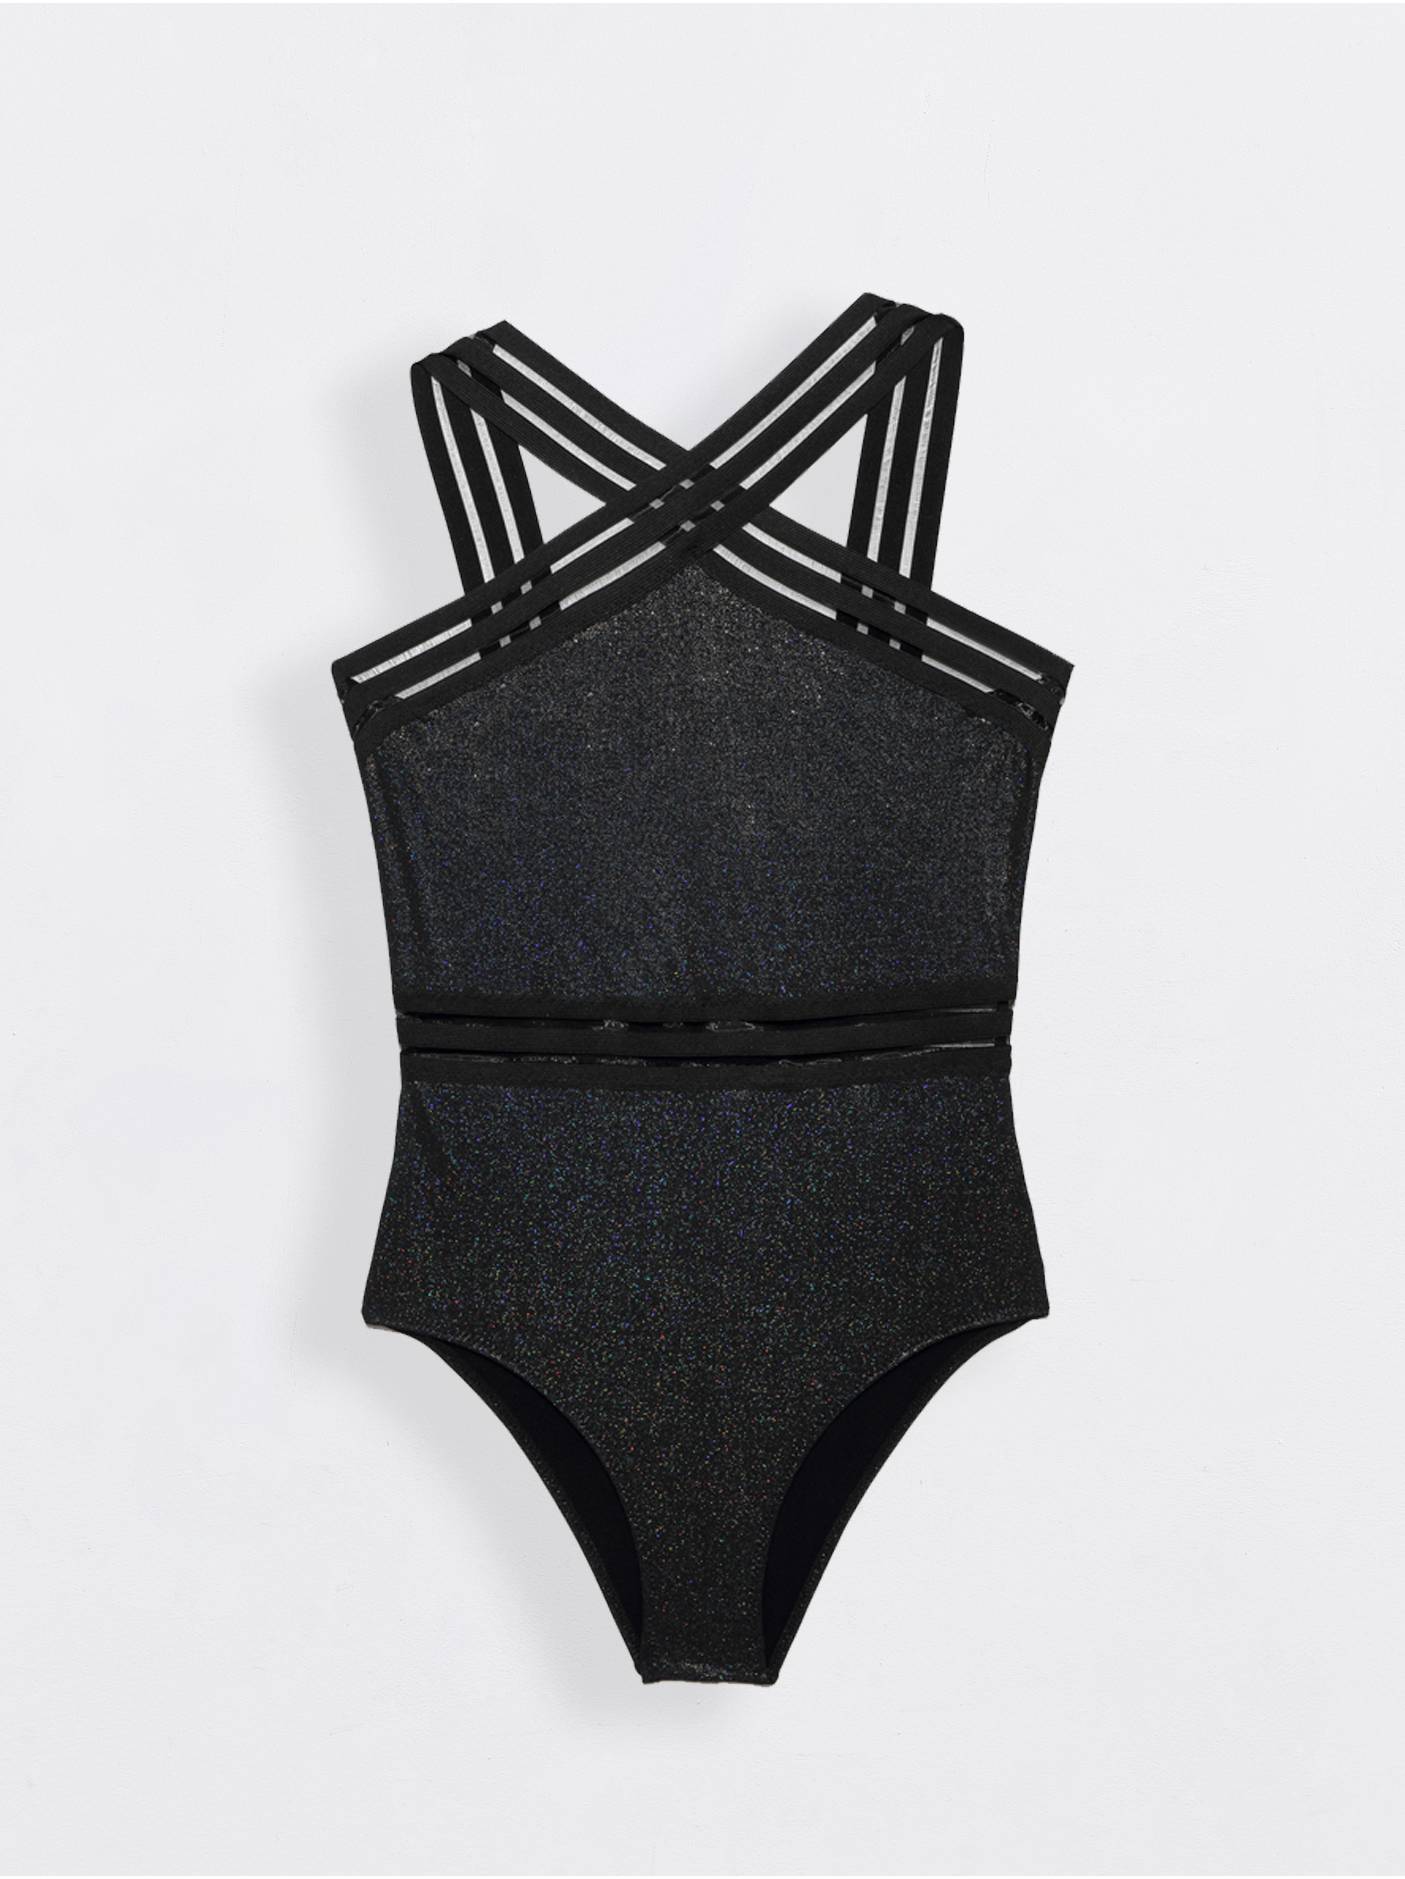 Ультрамодный купальник с эффектом мерцания BELLA DONNA Conte ⭐️, цвет black, размер 170 - фото 1